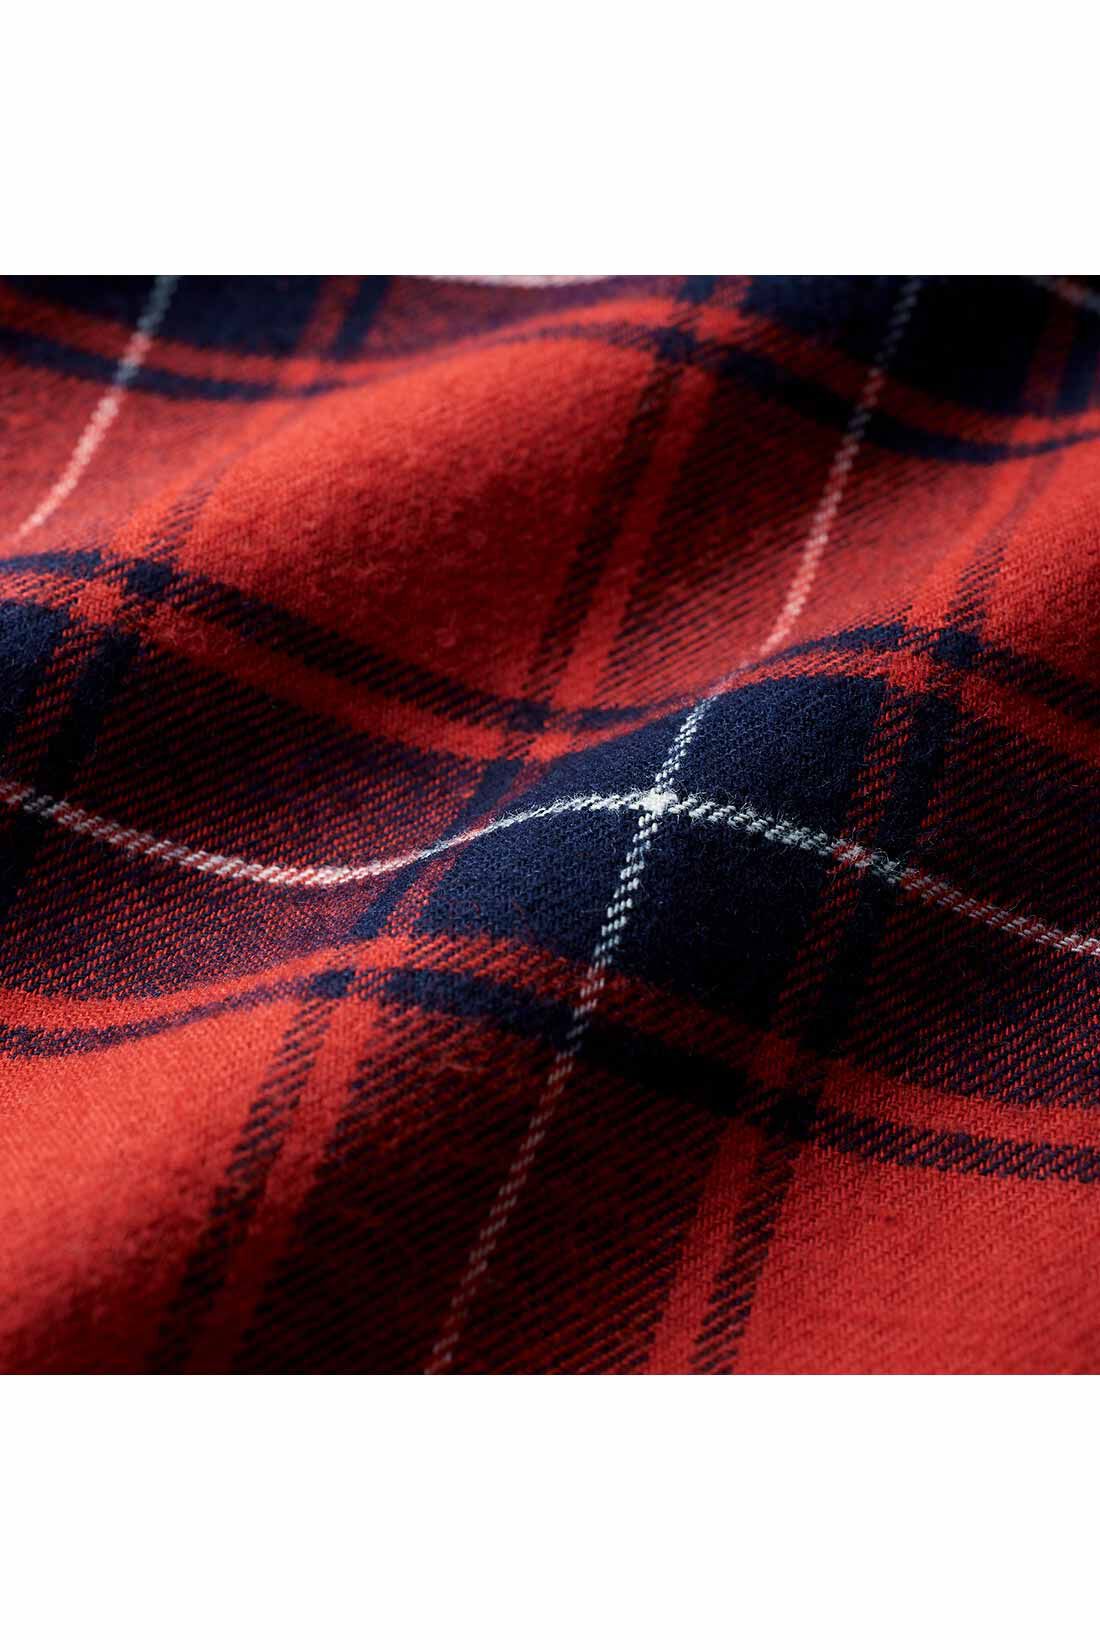 THREE FIFTY STANDARD|THREE FIFTY STANDARD タータンチェックスタンドカラーシャツ〈赤〉|ゆっくりと織り上げ、さらに起毛させることで風合いのある生地に。